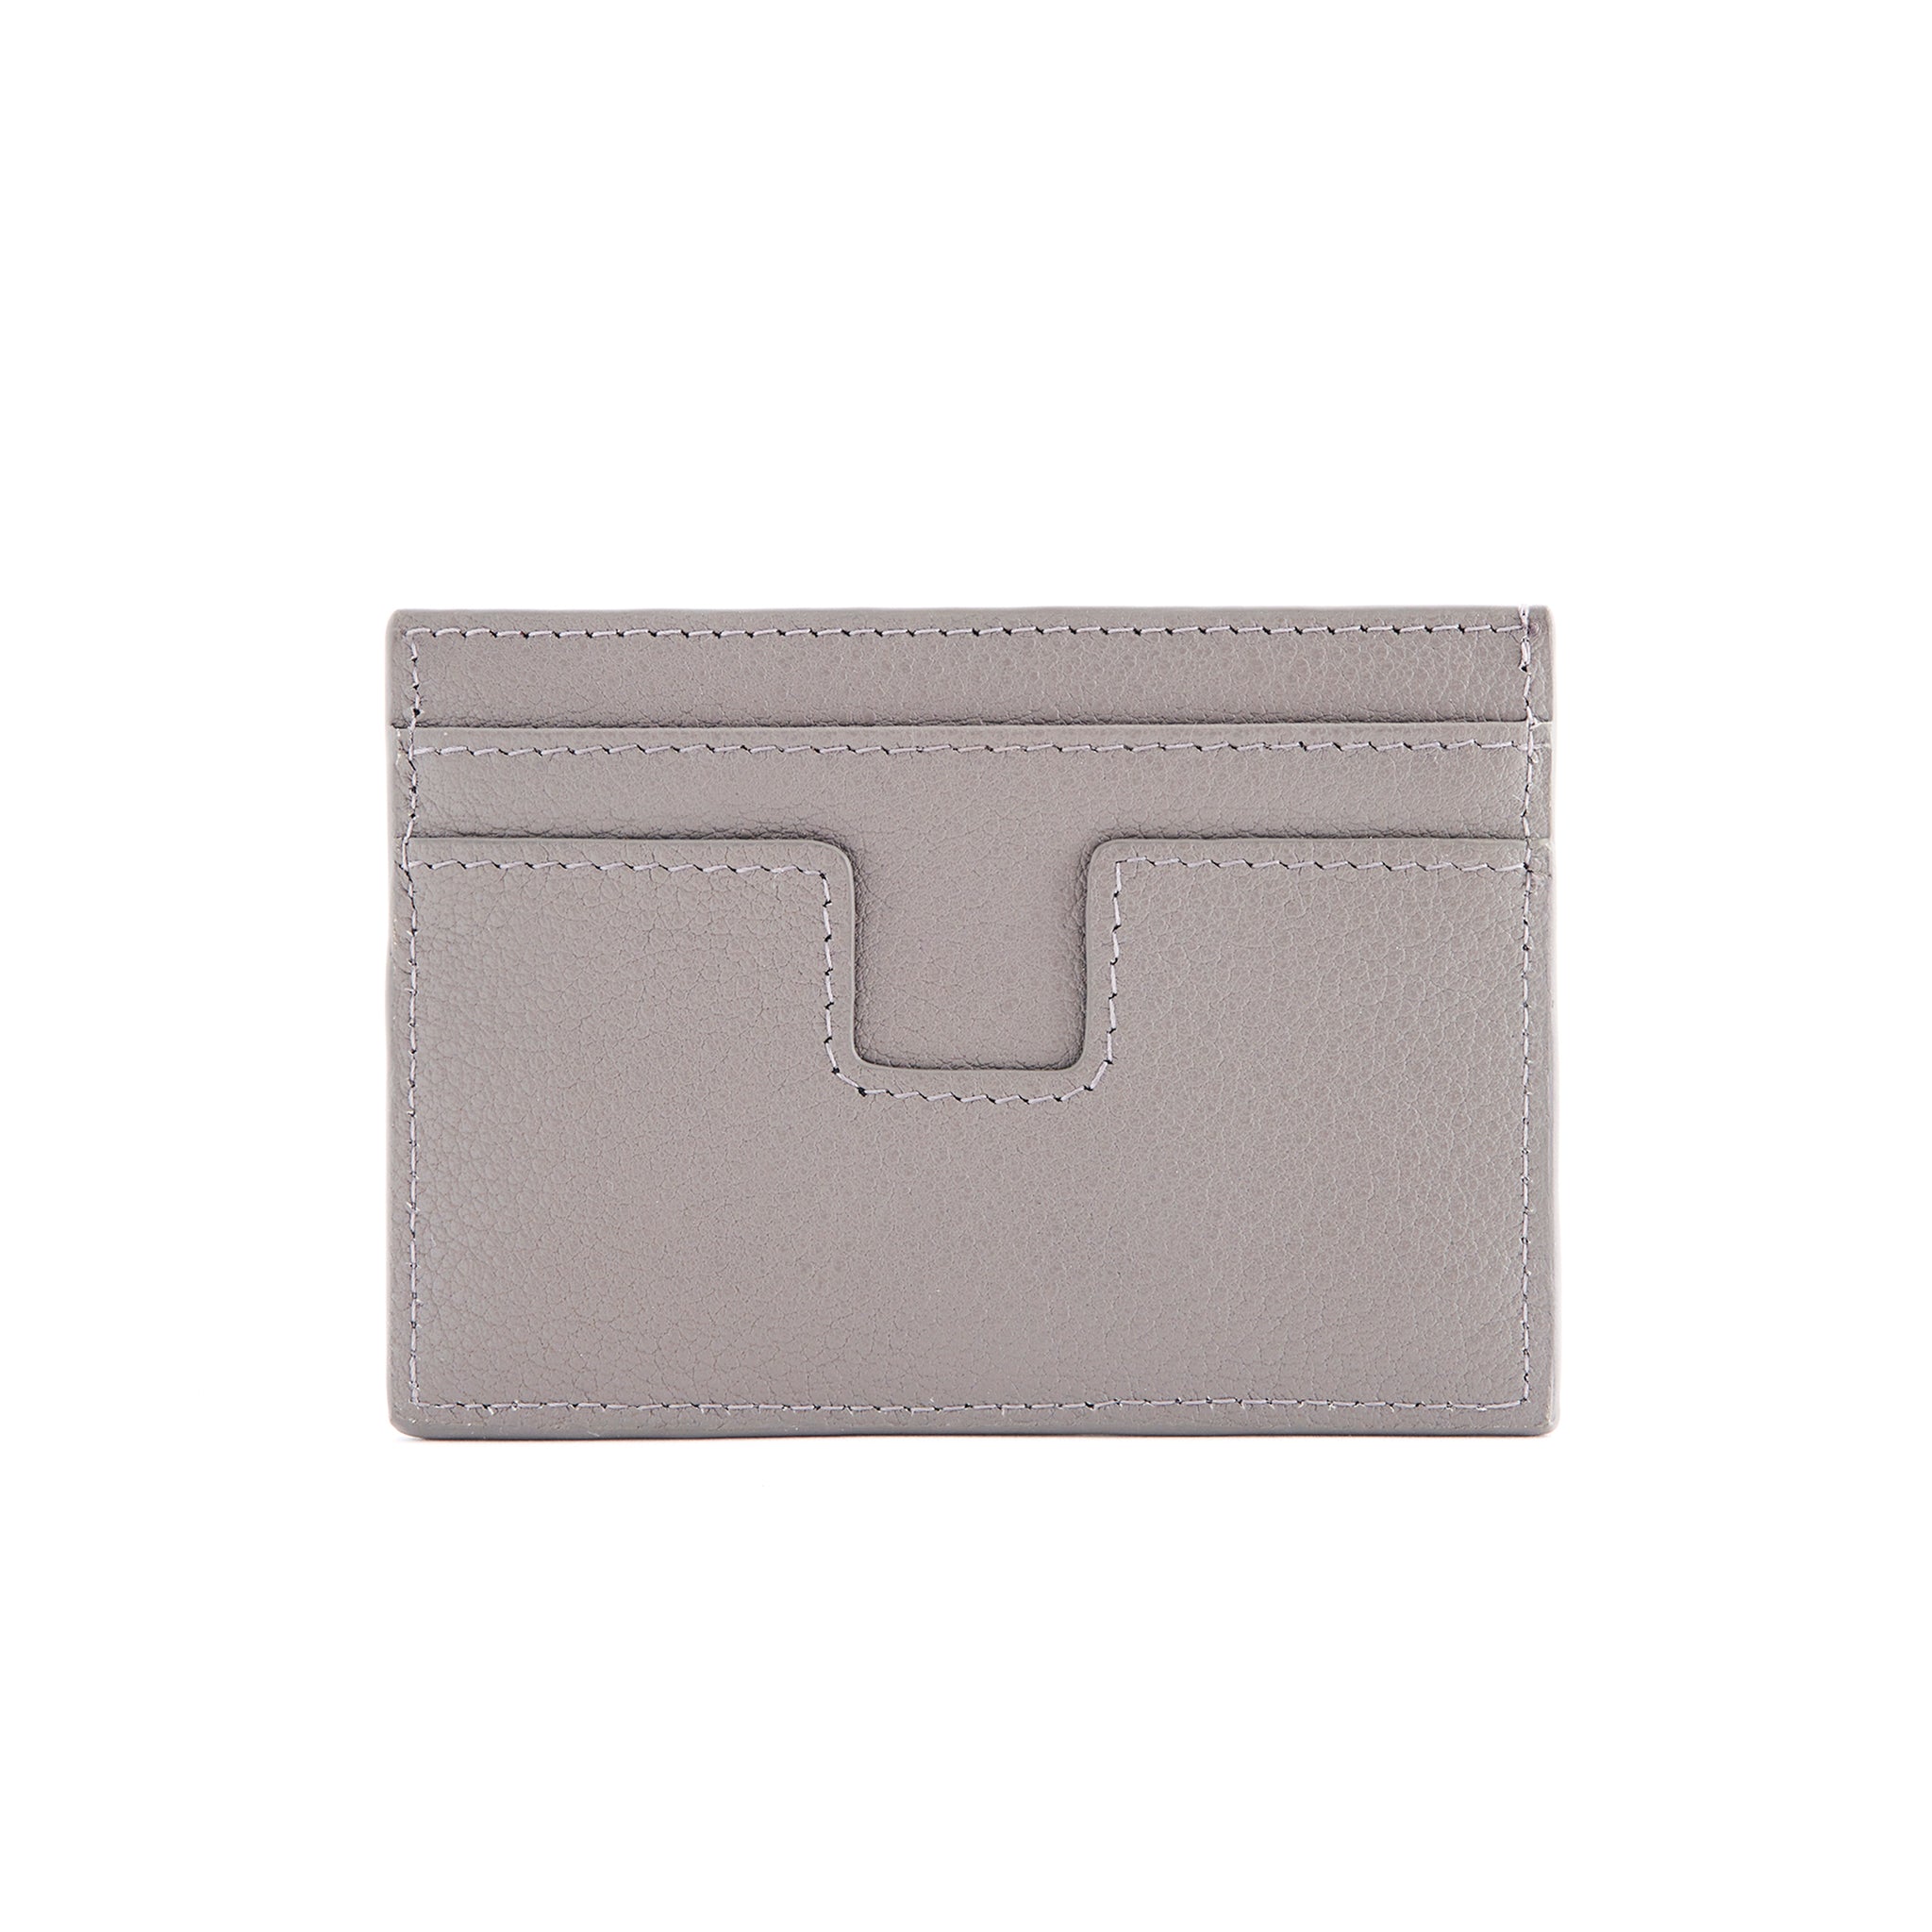 Arthur - Leather Cardholder in Grey